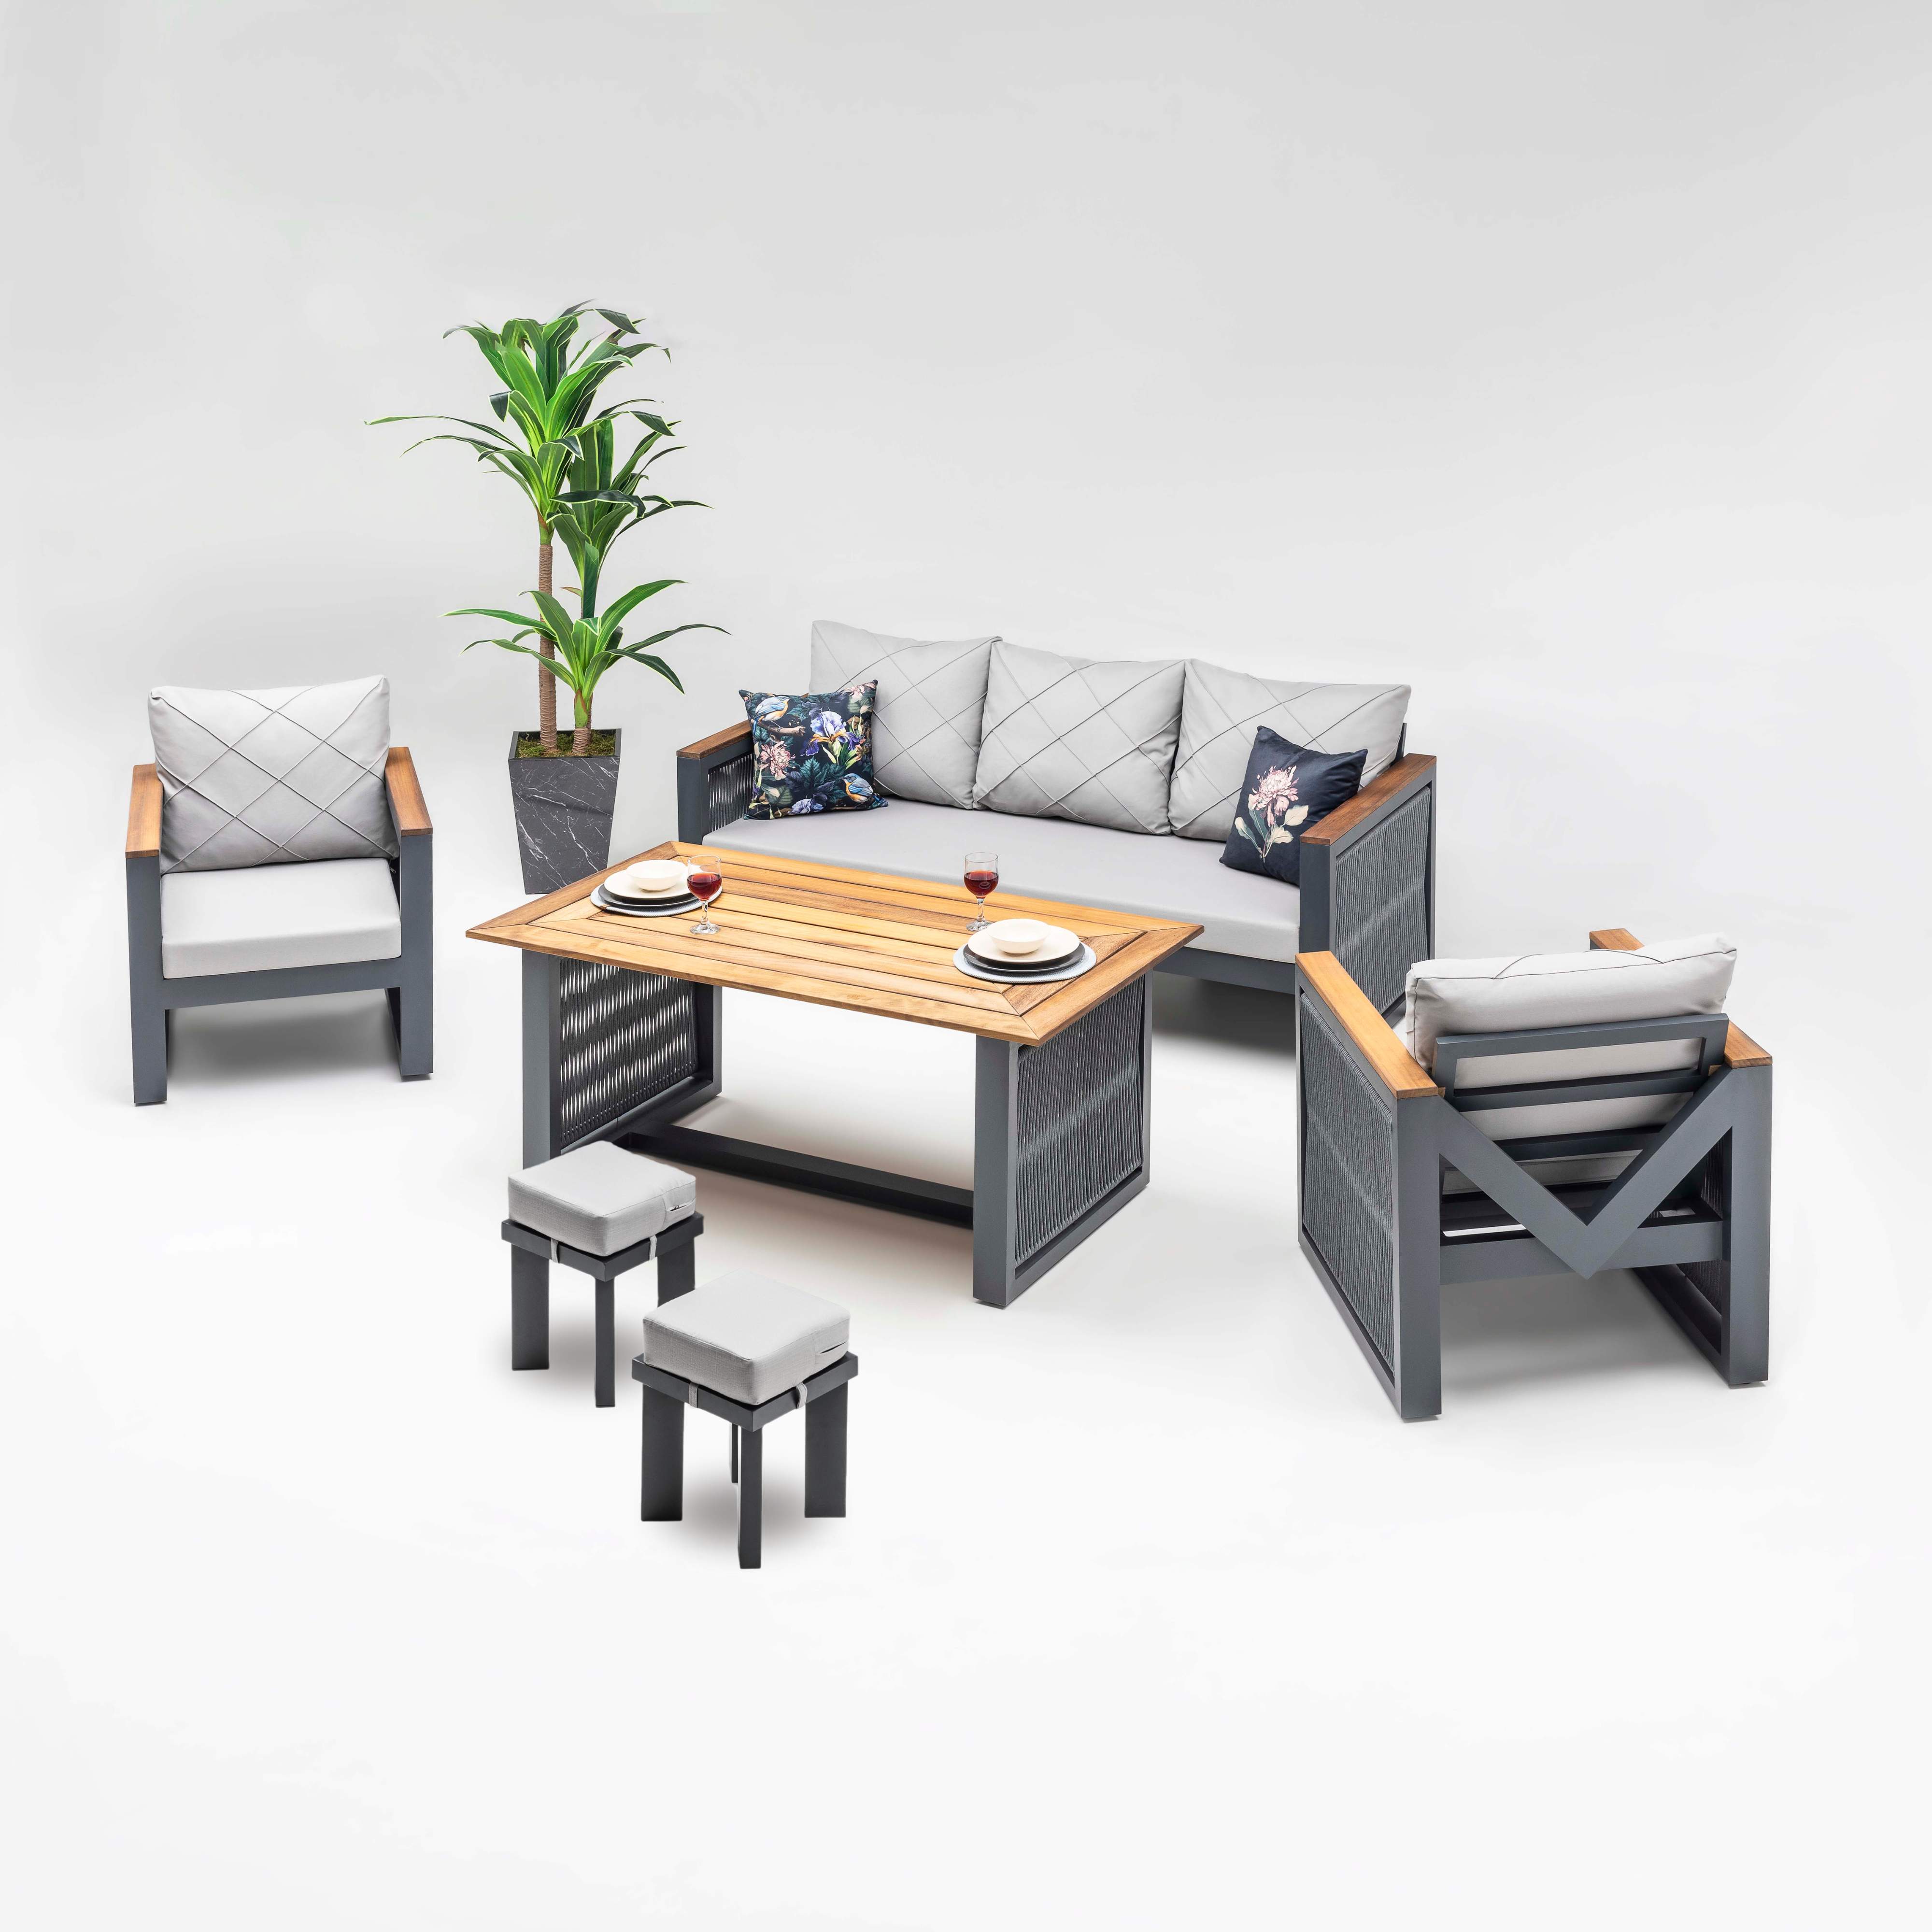 Stilona Imperial - Exklusives Garten Loungemöbel Set mit Seil-Optik und afrikanischem Iroko-Holz